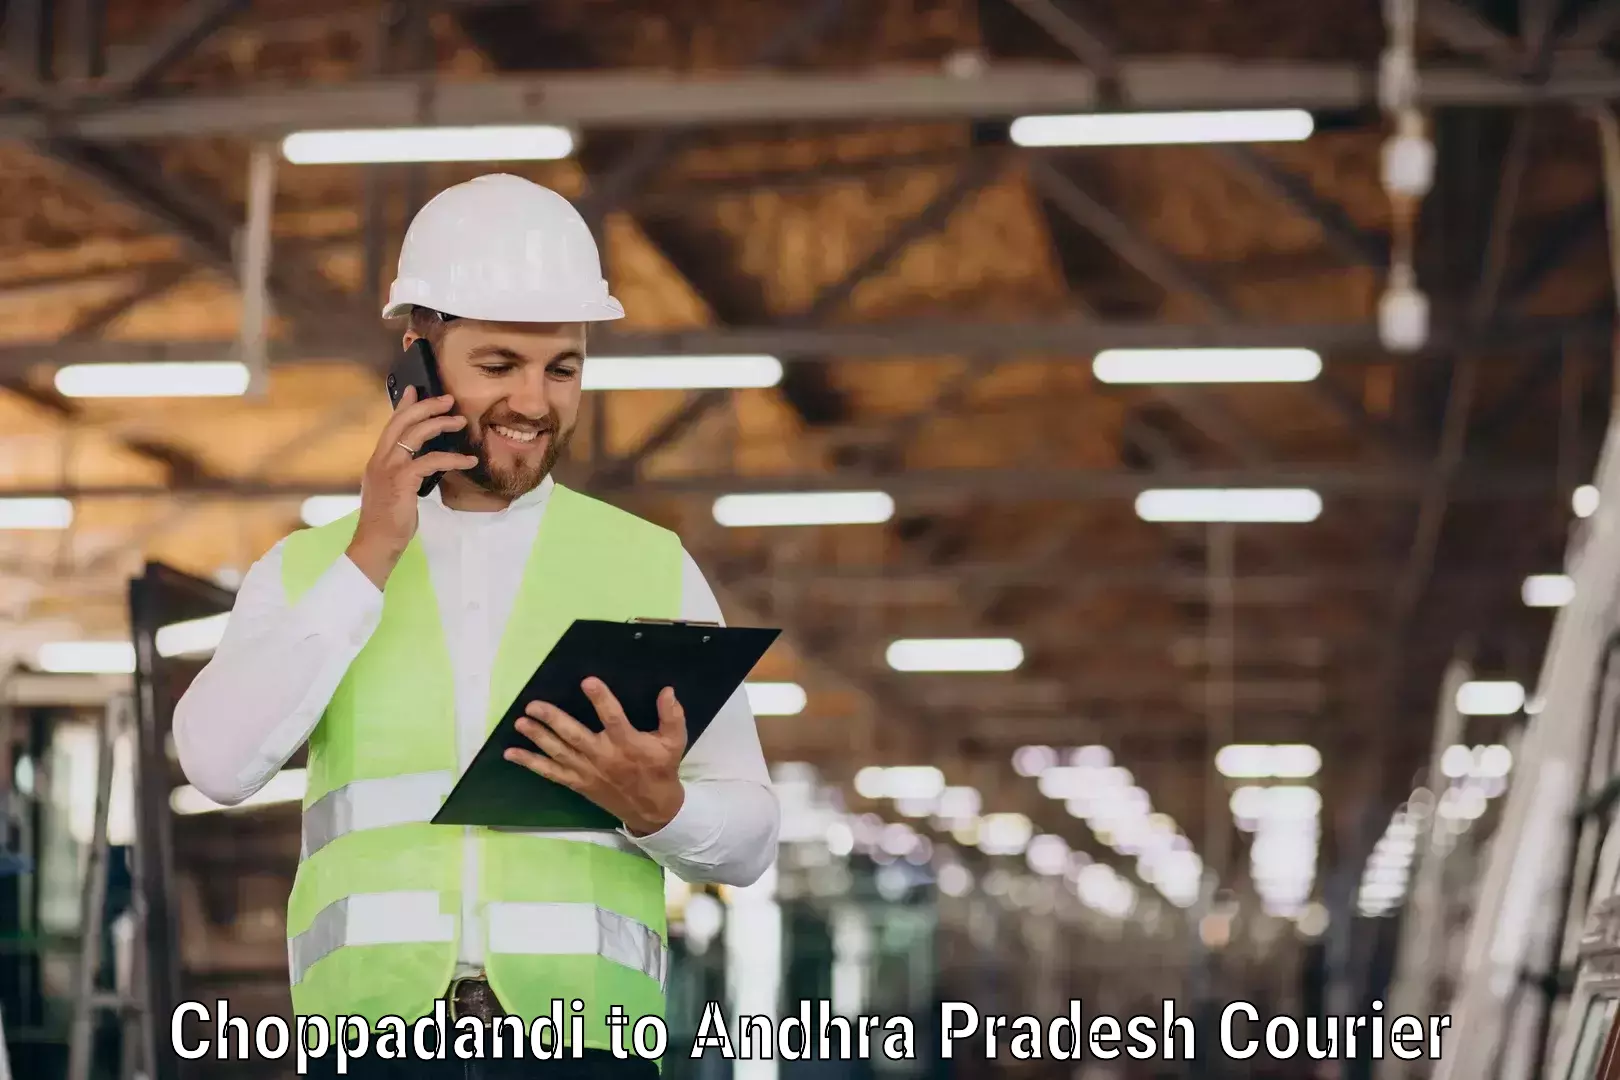 Smart shipping technology Choppadandi to Andhra Pradesh